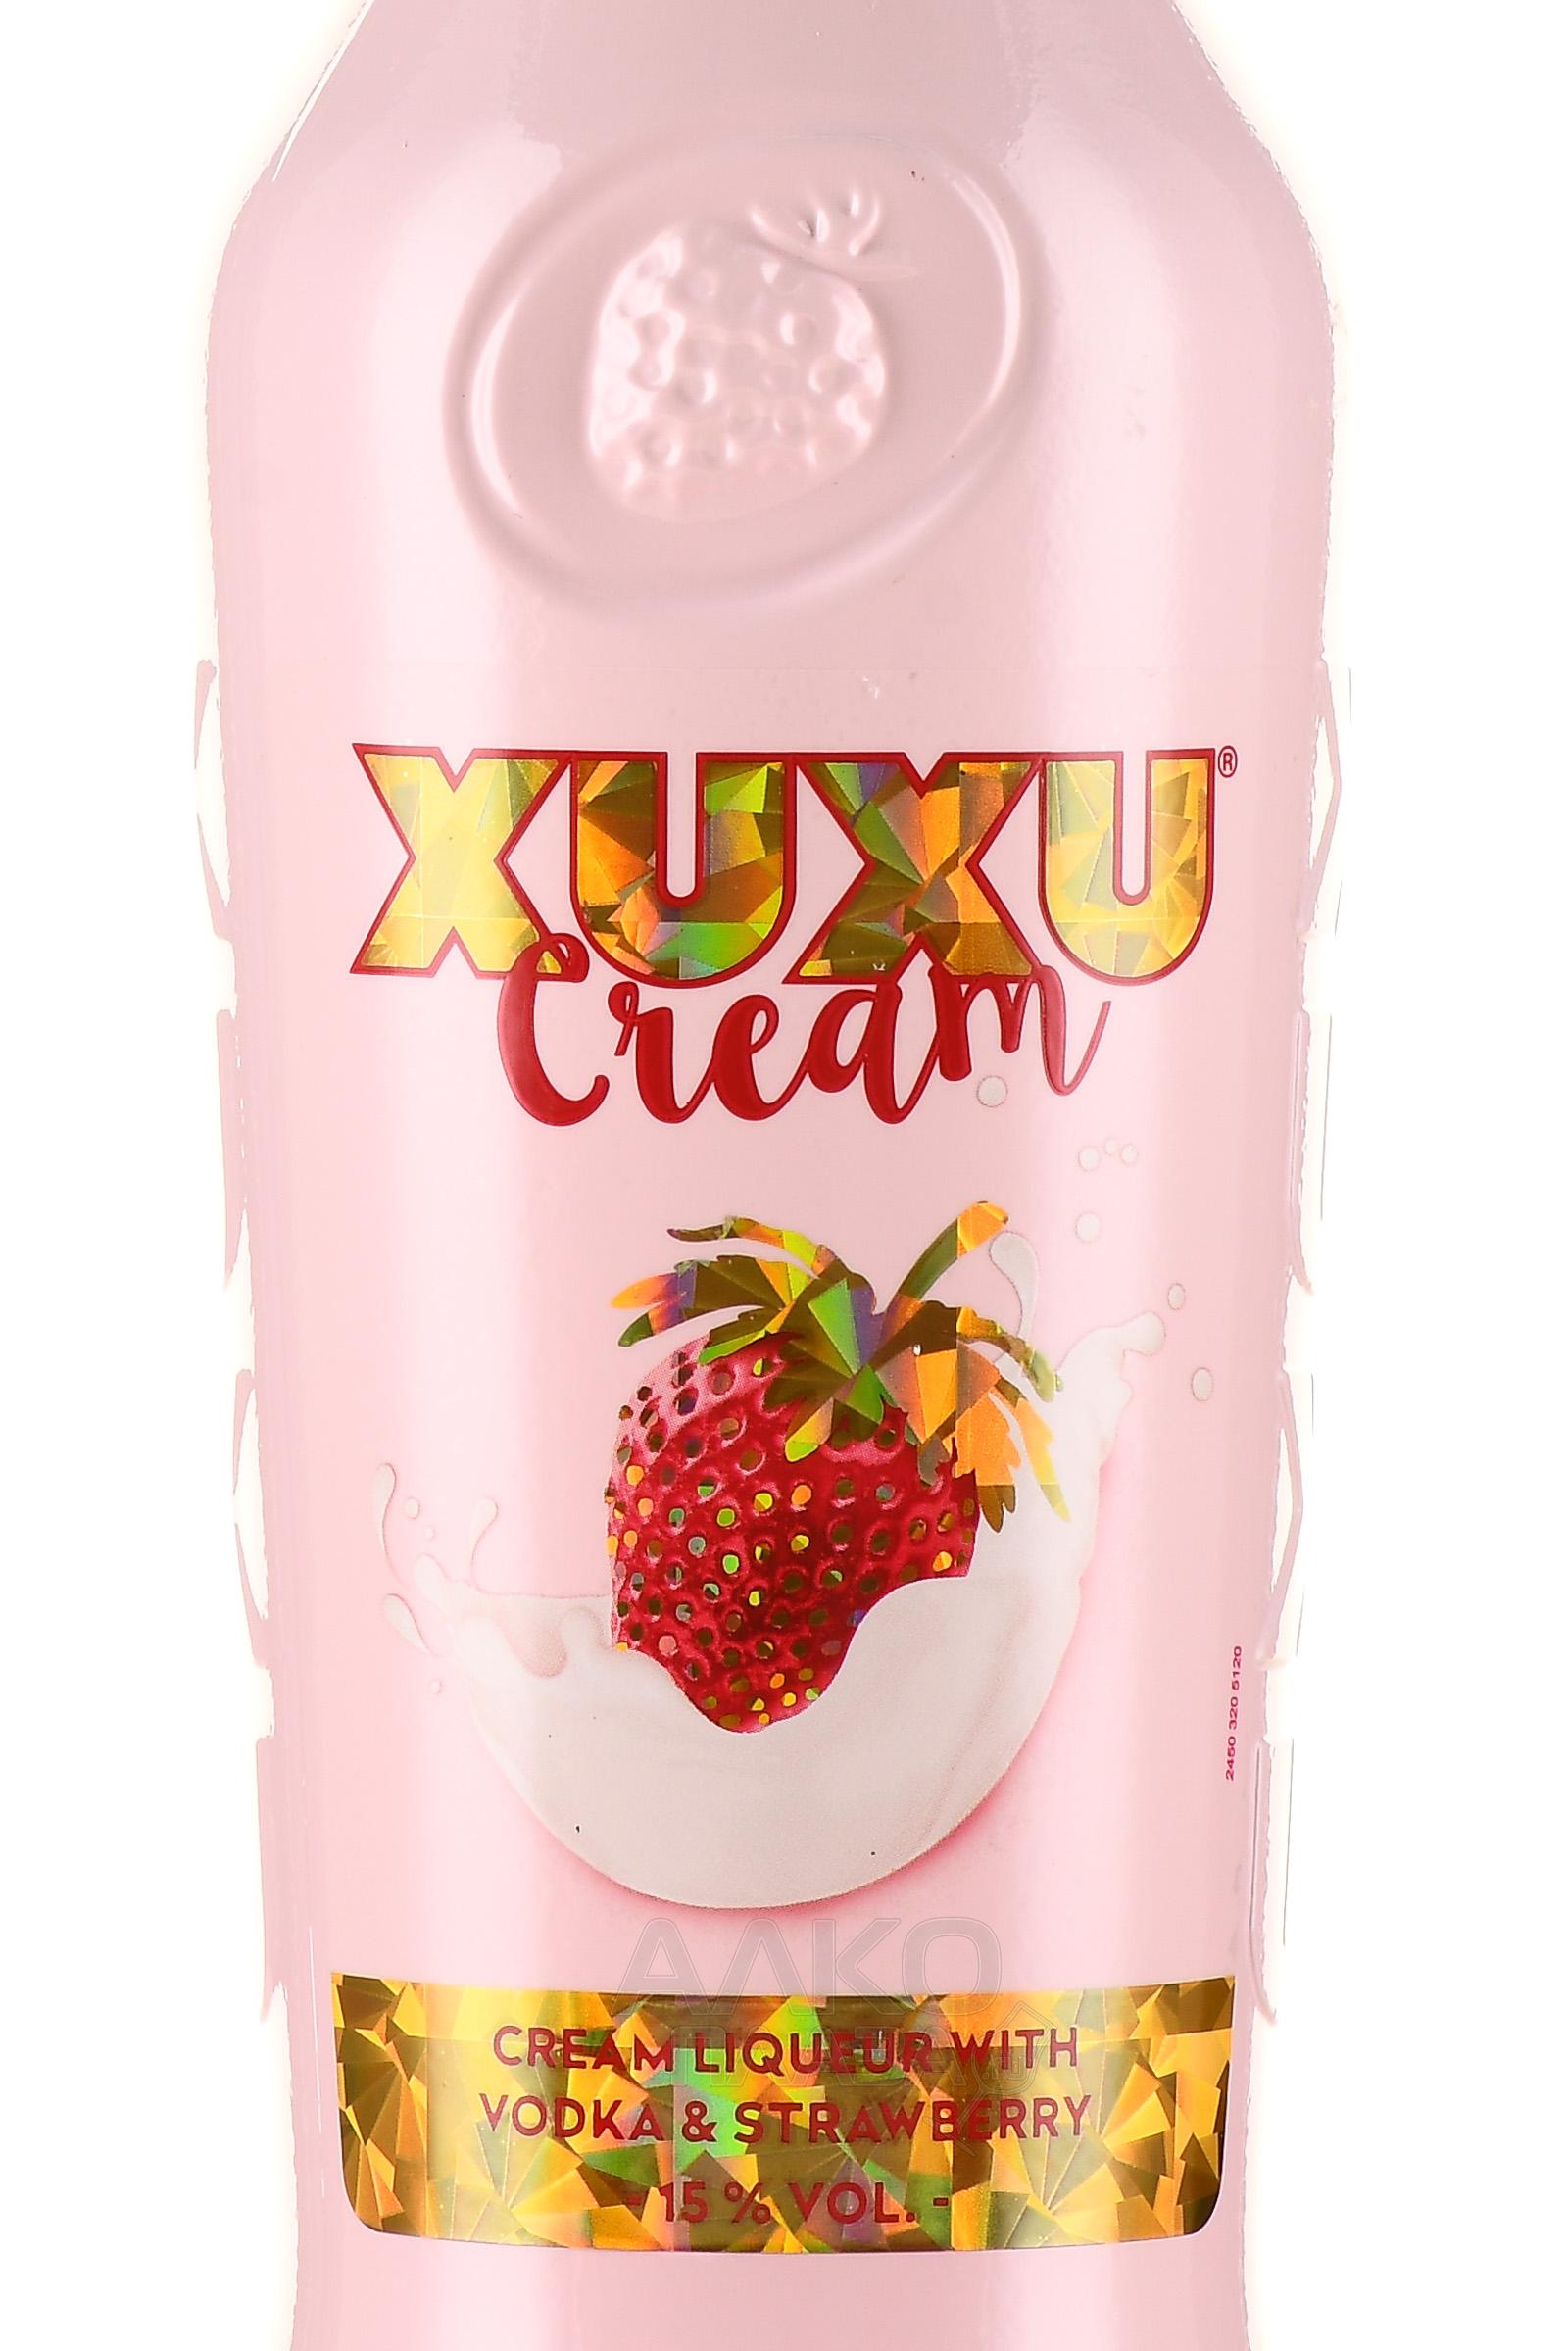 XUXU Cream - купить ликер эмульсионный Ксу-Ксу Крем 0.7 л - цена